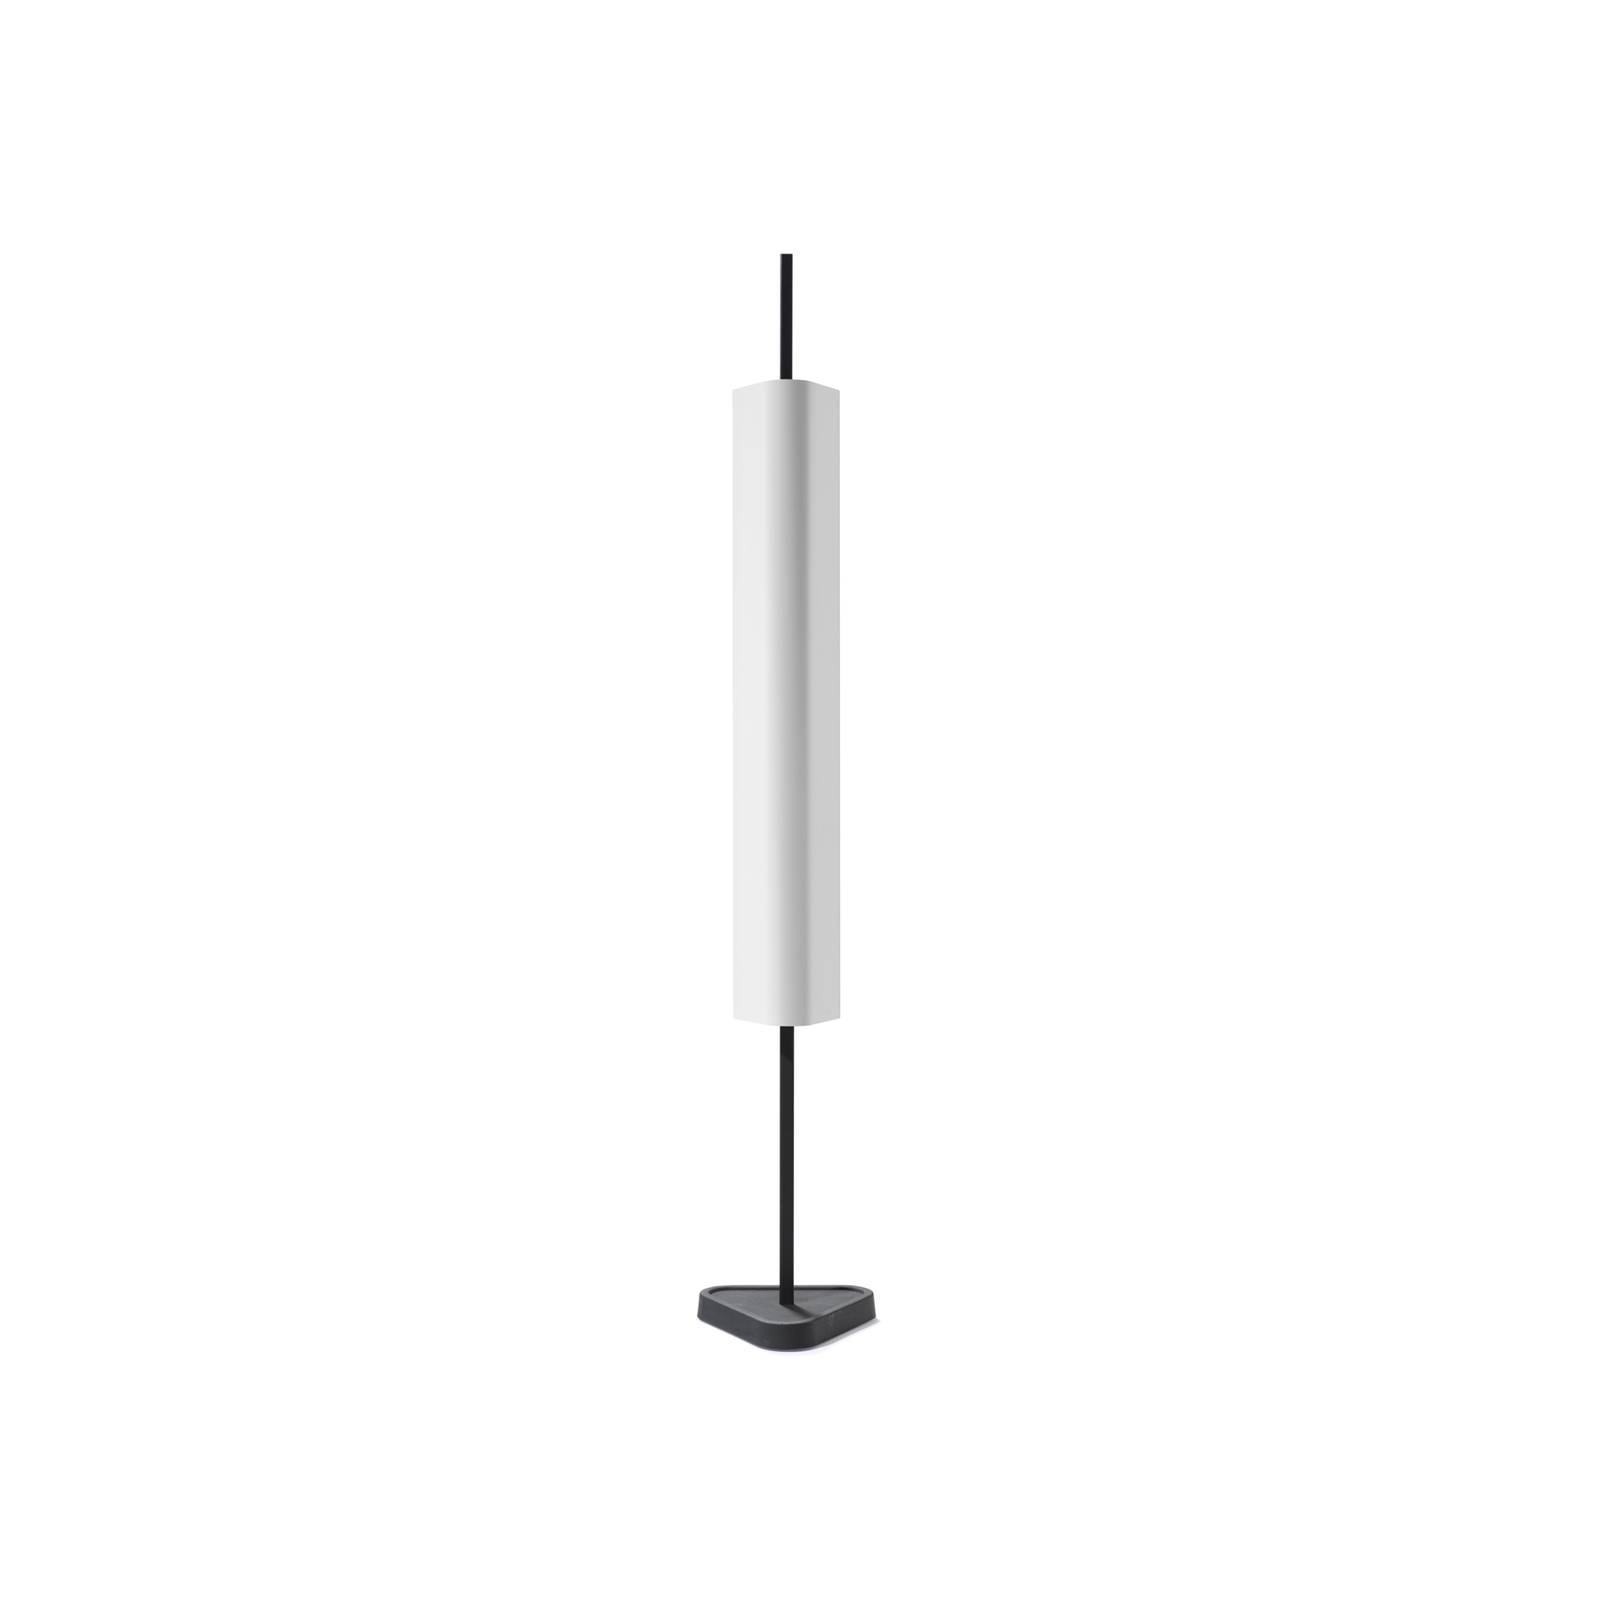 Flos emi led asztali lámpa, fehér, magasság 114 cm, fényerőszabályozható